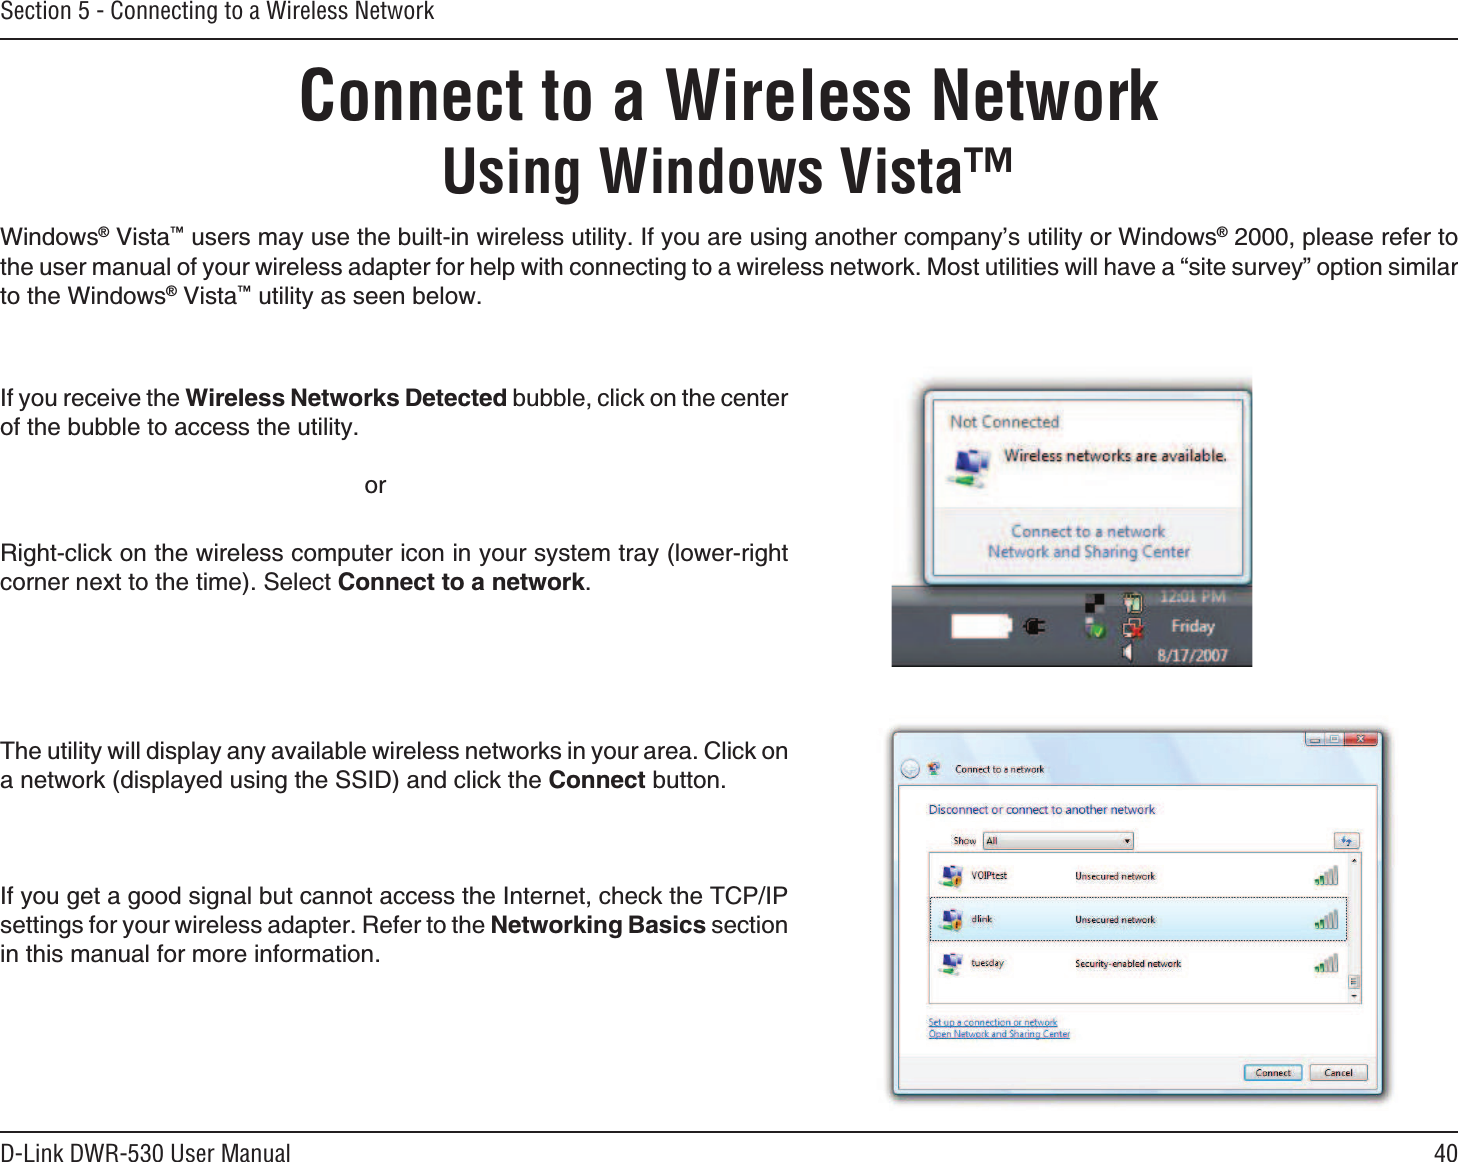 40D-Link DWR-530 User ManualSection 5 - Connecting to a Wireless NetworkConnect to a Wireless NetworkUsing Windows Vista™9KPFQYUs8KUVCŠWUGTUOC[WUGVJGDWKNVKPYKTGNGUUWVKNKV[+H[QWCTGWUKPICPQVJGTEQORCP[ŏUWVKNKV[QT9KPFQYUsRNGCUGTGHGTVQVJGWUGTOCPWCNQH[QWTYKTGNGUUCFCRVGTHQTJGNRYKVJEQPPGEVKPIVQCYKTGNGUUPGVYQTM/QUVWVKNKVKGUYKNNJCXGCőUKVGUWTXG[ŒQRVKQPUKOKNCTVQVJG9KPFQYUs8KUVCŠWVKNKV[CUUGGPDGNQY4KIJVENKEMQPVJGYKTGNGUUEQORWVGTKEQPKP[QWTU[UVGOVTC[NQYGTTKIJVEQTPGTPGZVVQVJGVKOG5GNGEV%QPPGEVVQCPGVYQTM+H[QWTGEGKXGVJG9KTGNGUU0GVYQTMU&amp;GVGEVGFDWDDNGENKEMQPVJGEGPVGTQHVJGDWDDNGVQCEEGUUVJGWVKNKV[QT6JGWVKNKV[YKNNFKURNC[CP[CXCKNCDNGYKTGNGUUPGVYQTMUKP[QWTCTGC%NKEMQPCPGVYQTMFKURNC[GFWUKPIVJG55+&amp;CPFENKEMVJG%QPPGEVDWVVQP+H[QWIGVCIQQFUKIPCNDWVECPPQVCEEGUUVJG+PVGTPGVEJGEMVJG6%2+2UGVVKPIUHQT[QWTYKTGNGUUCFCRVGT4GHGTVQVJG0GVYQTMKPI$CUKEUUGEVKQPKPVJKUOCPWCNHQTOQTGKPHQTOCVKQP